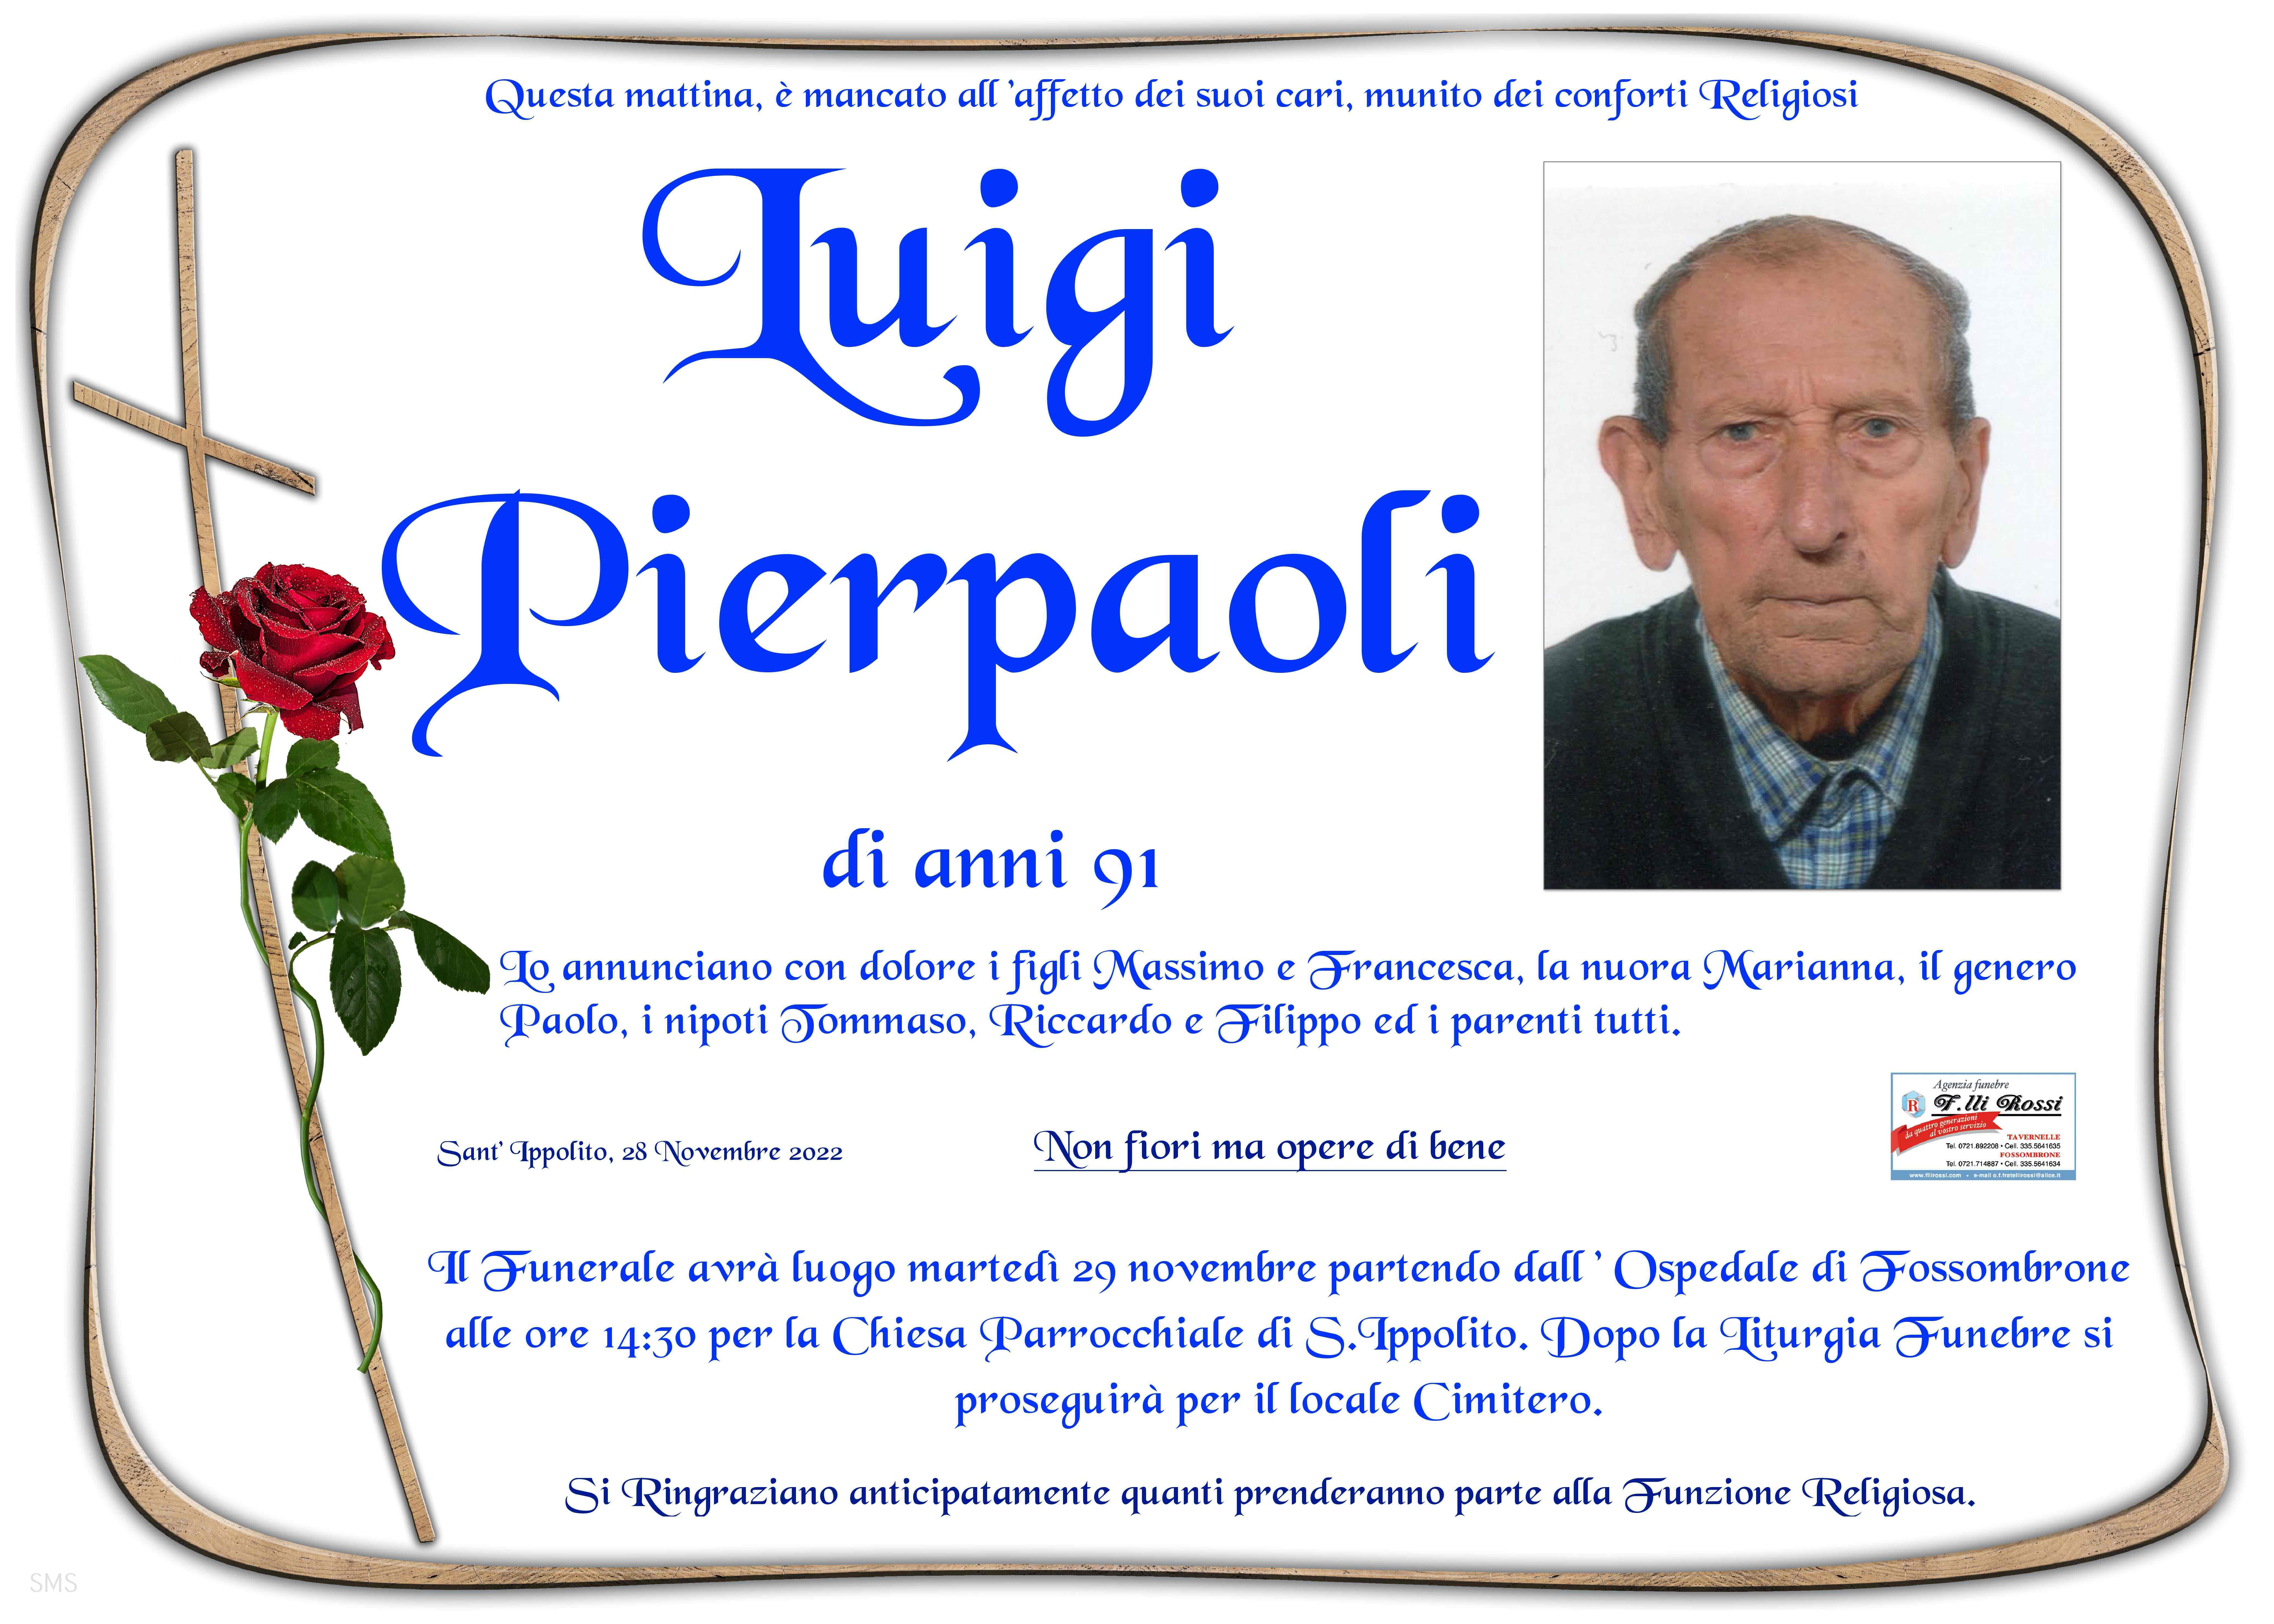 Luigi Pierpaoli